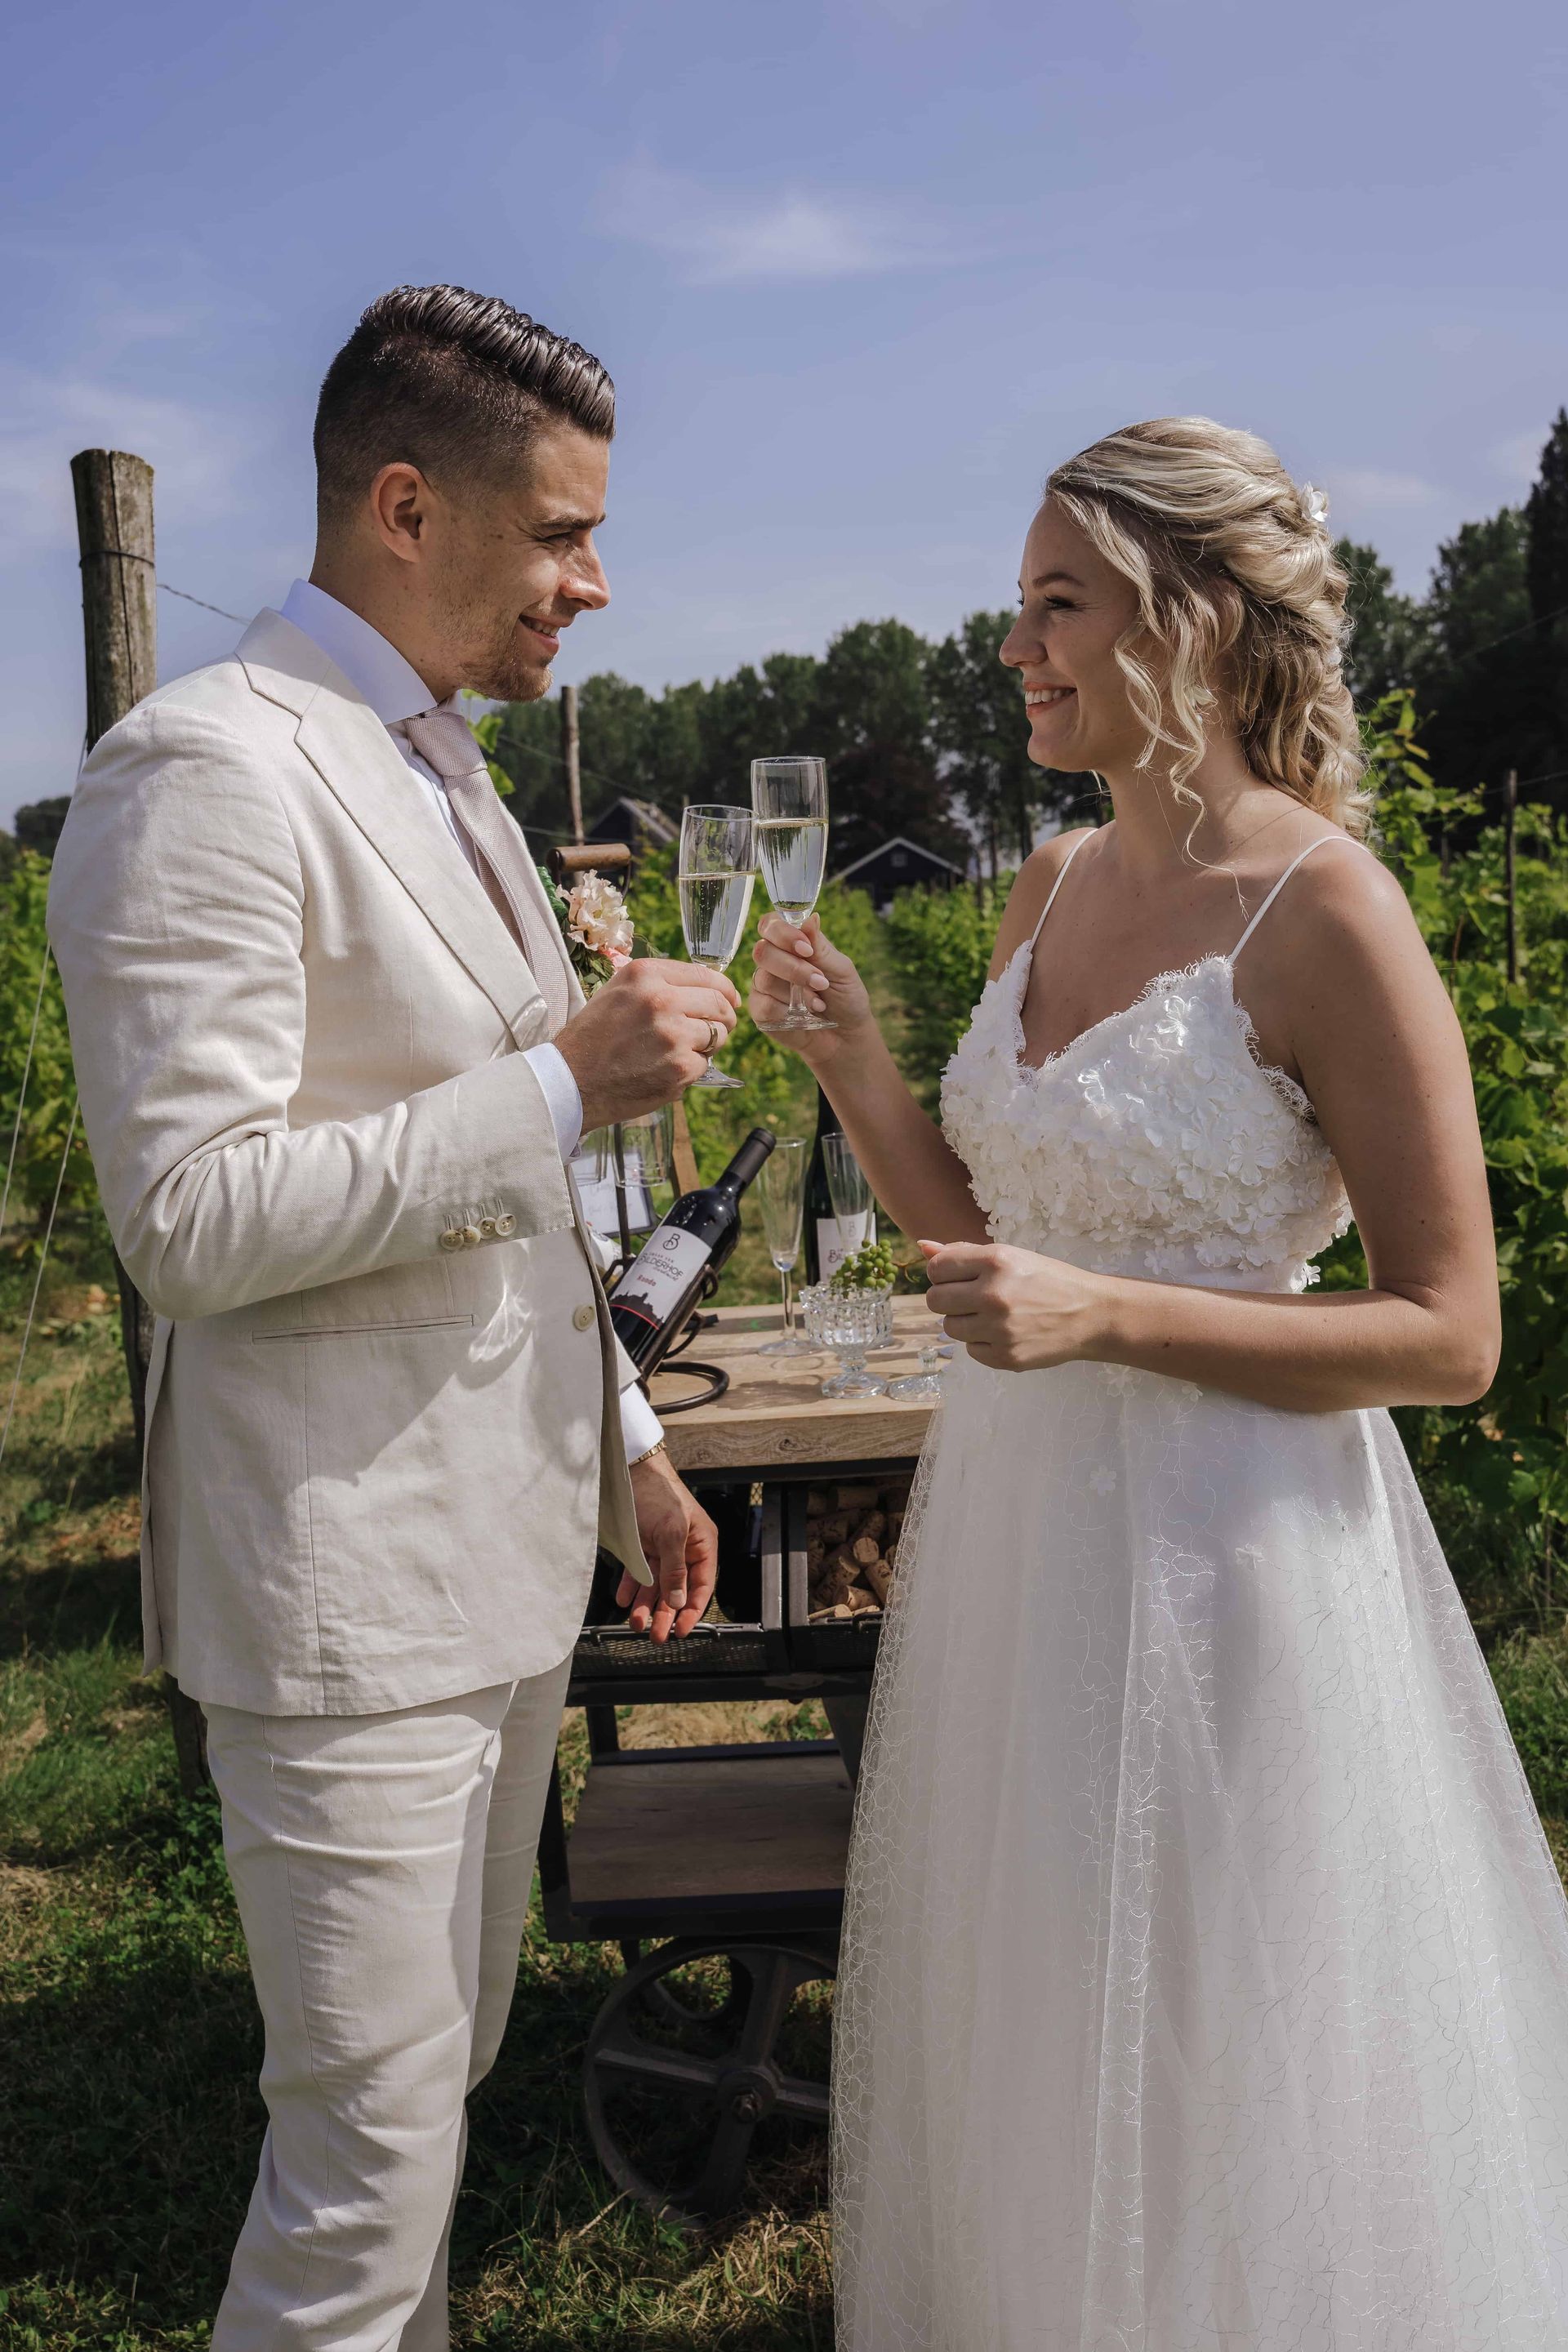 Proost moment Italiaanse bruiloft wijngaard Smaak van Bilderhof Dordrecht Zuid-Holland
Celebrate your moment | wedding & event planner